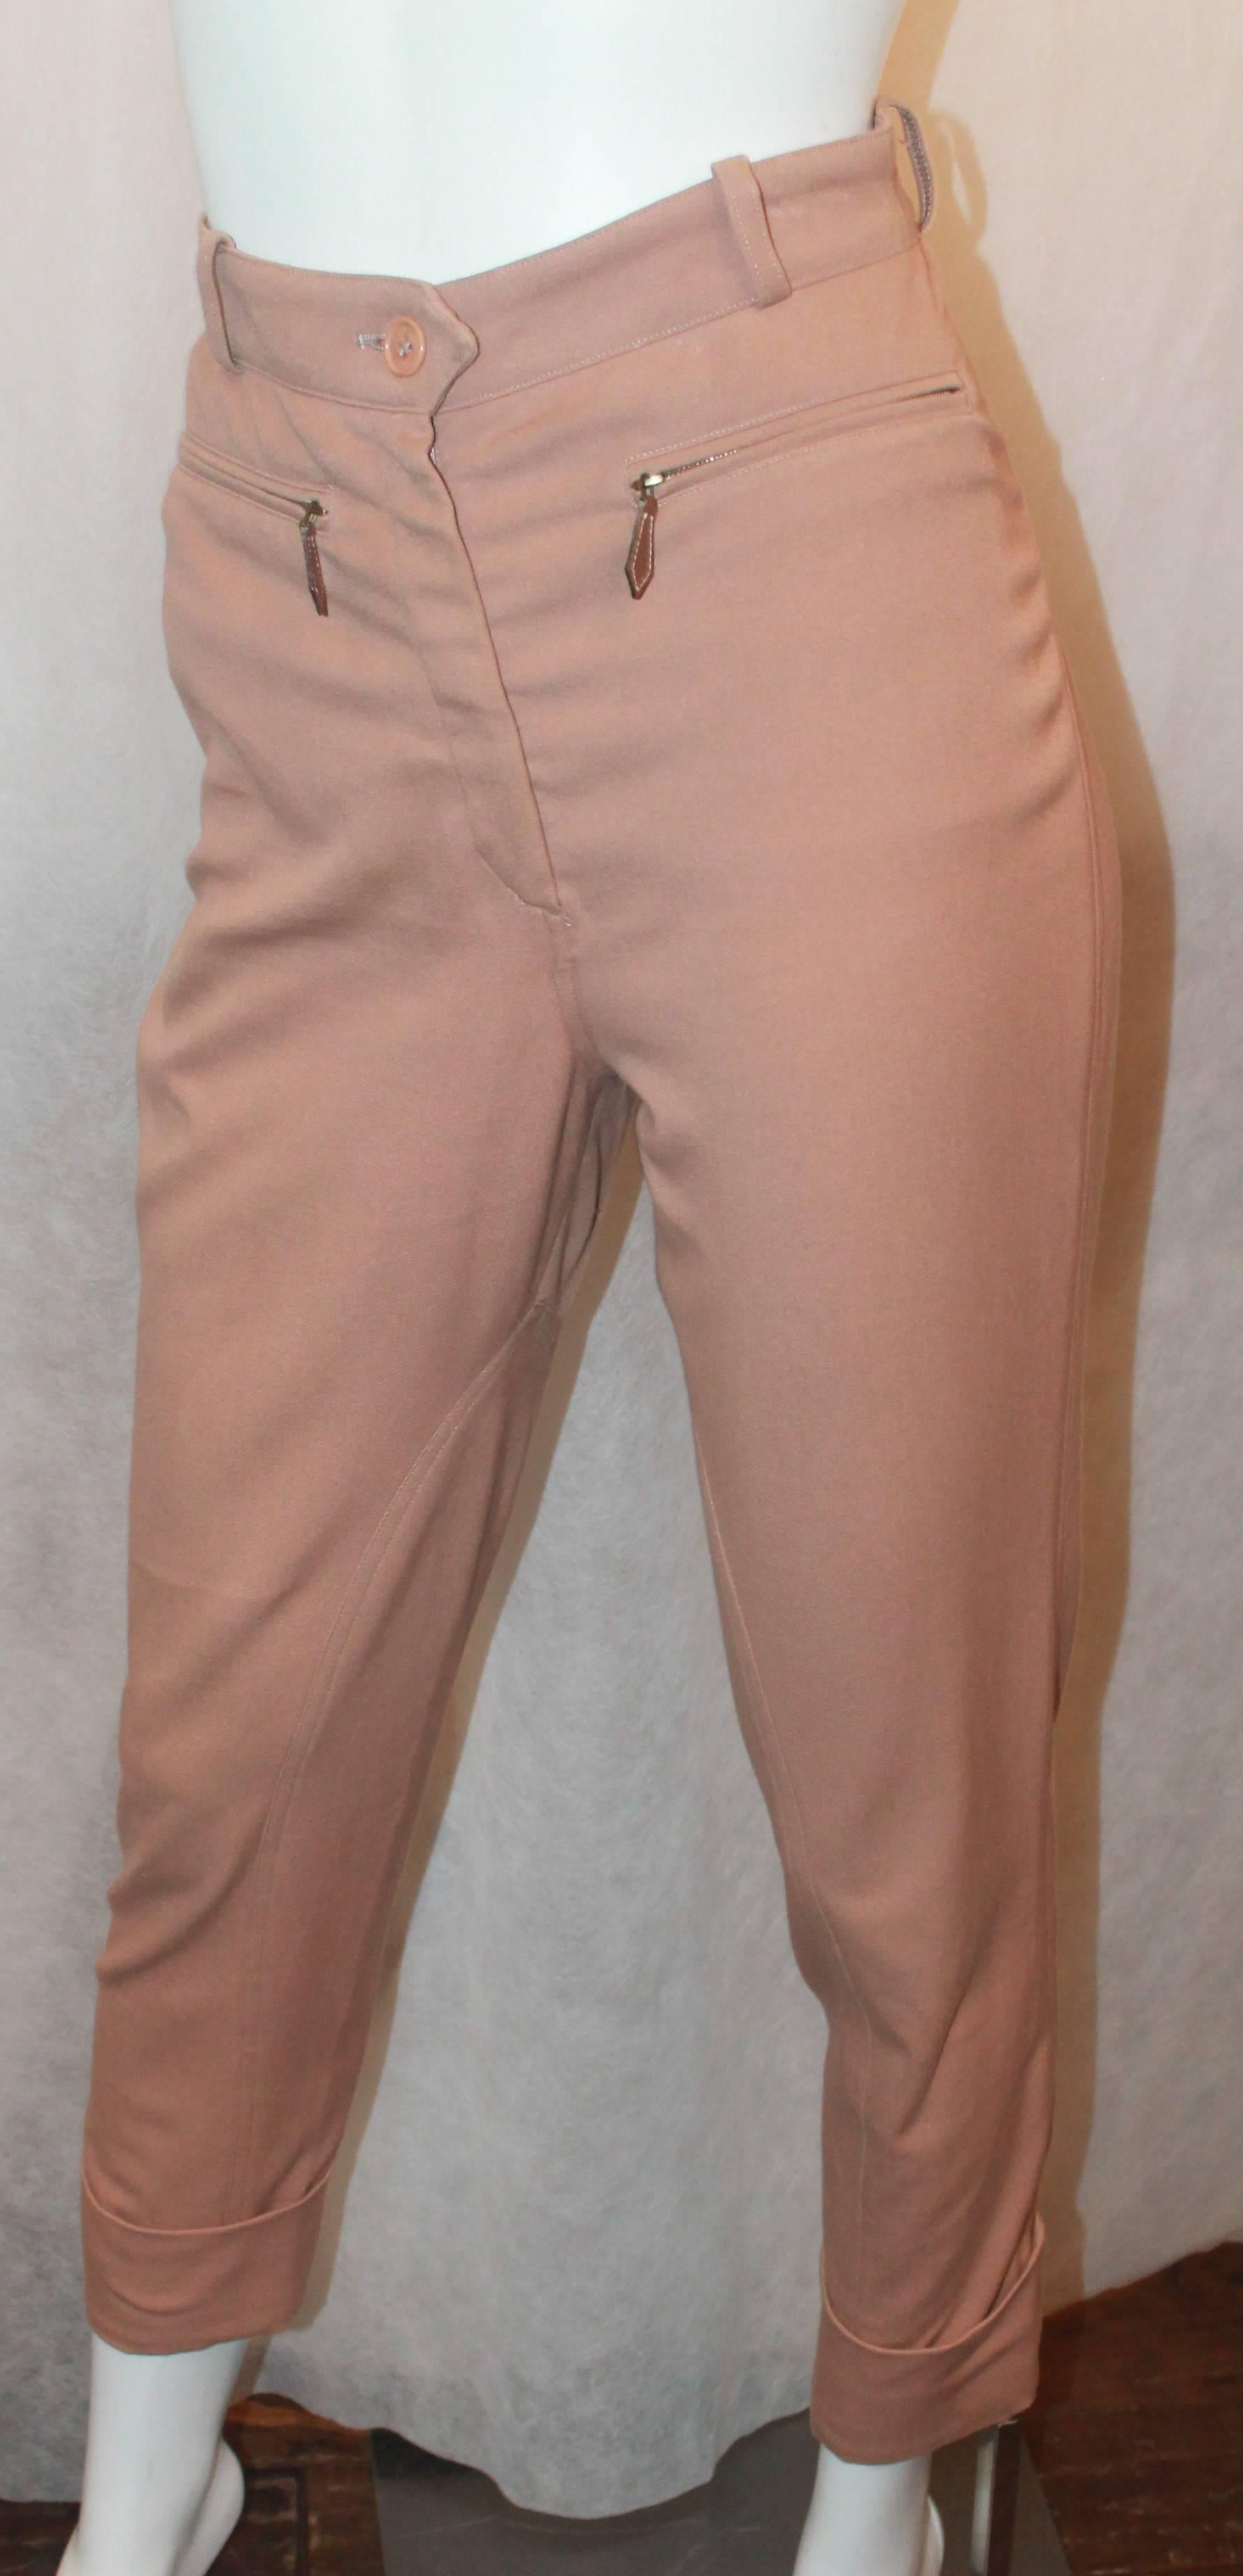 Pantalon d'équitation vintage mauve Hermes avec détails en cuir - 36 - 1990's. Ce pantalon est en bon état vintage avec une usure correspondant à son âge. Ils sont dotés d'un bas de manche et de fermetures éclair en cuir. Il y a deux poches sur le